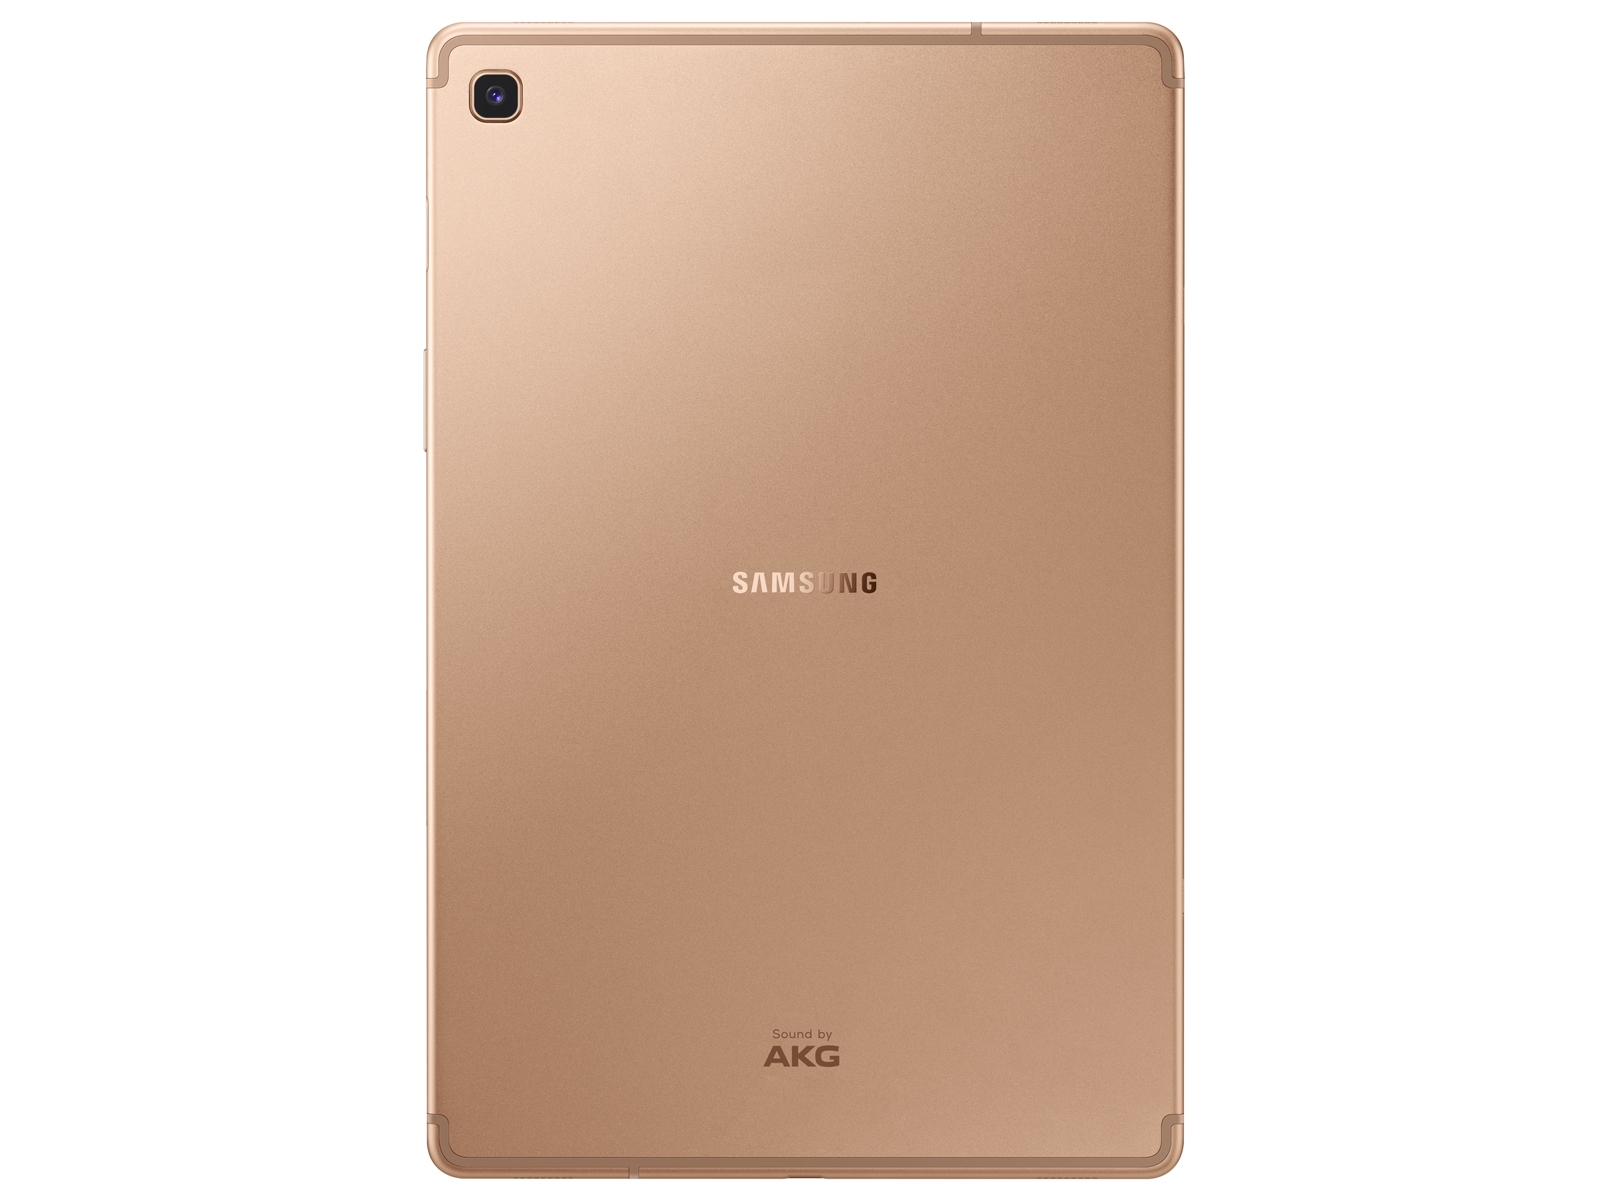 Galaxy Tab S5e 10.5, 64GB, Gold (Wi-Fi) Tablets - SM-T720NZDAXAR